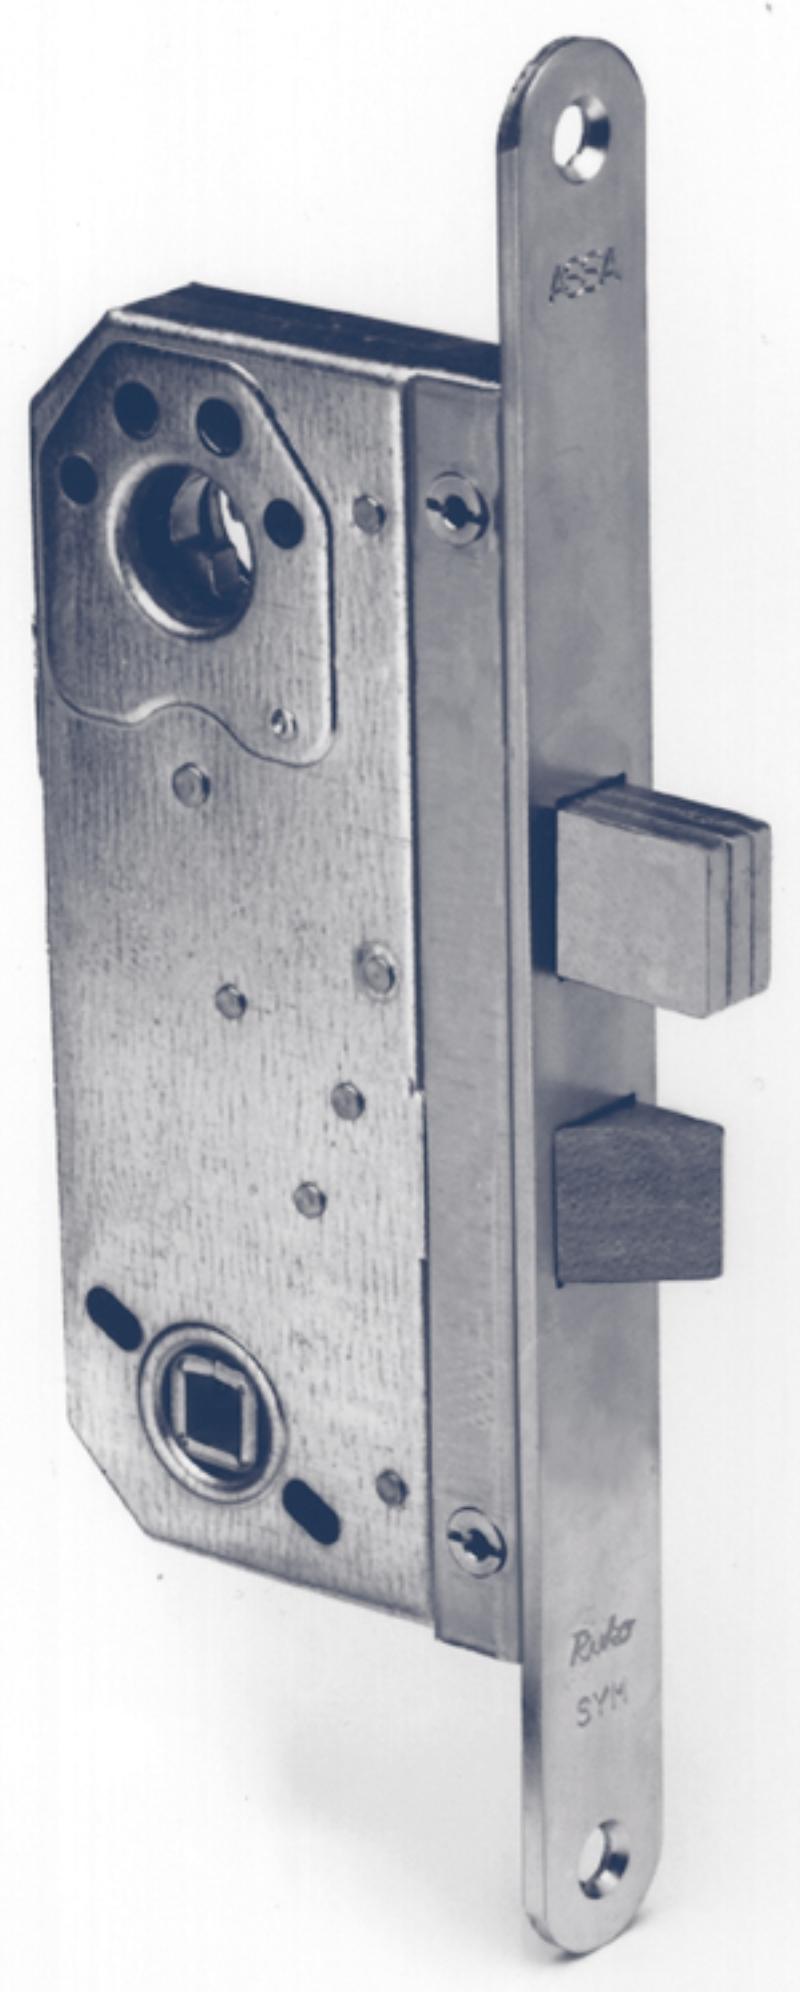 Assa lock box 565 u/tin bolt 12 mm